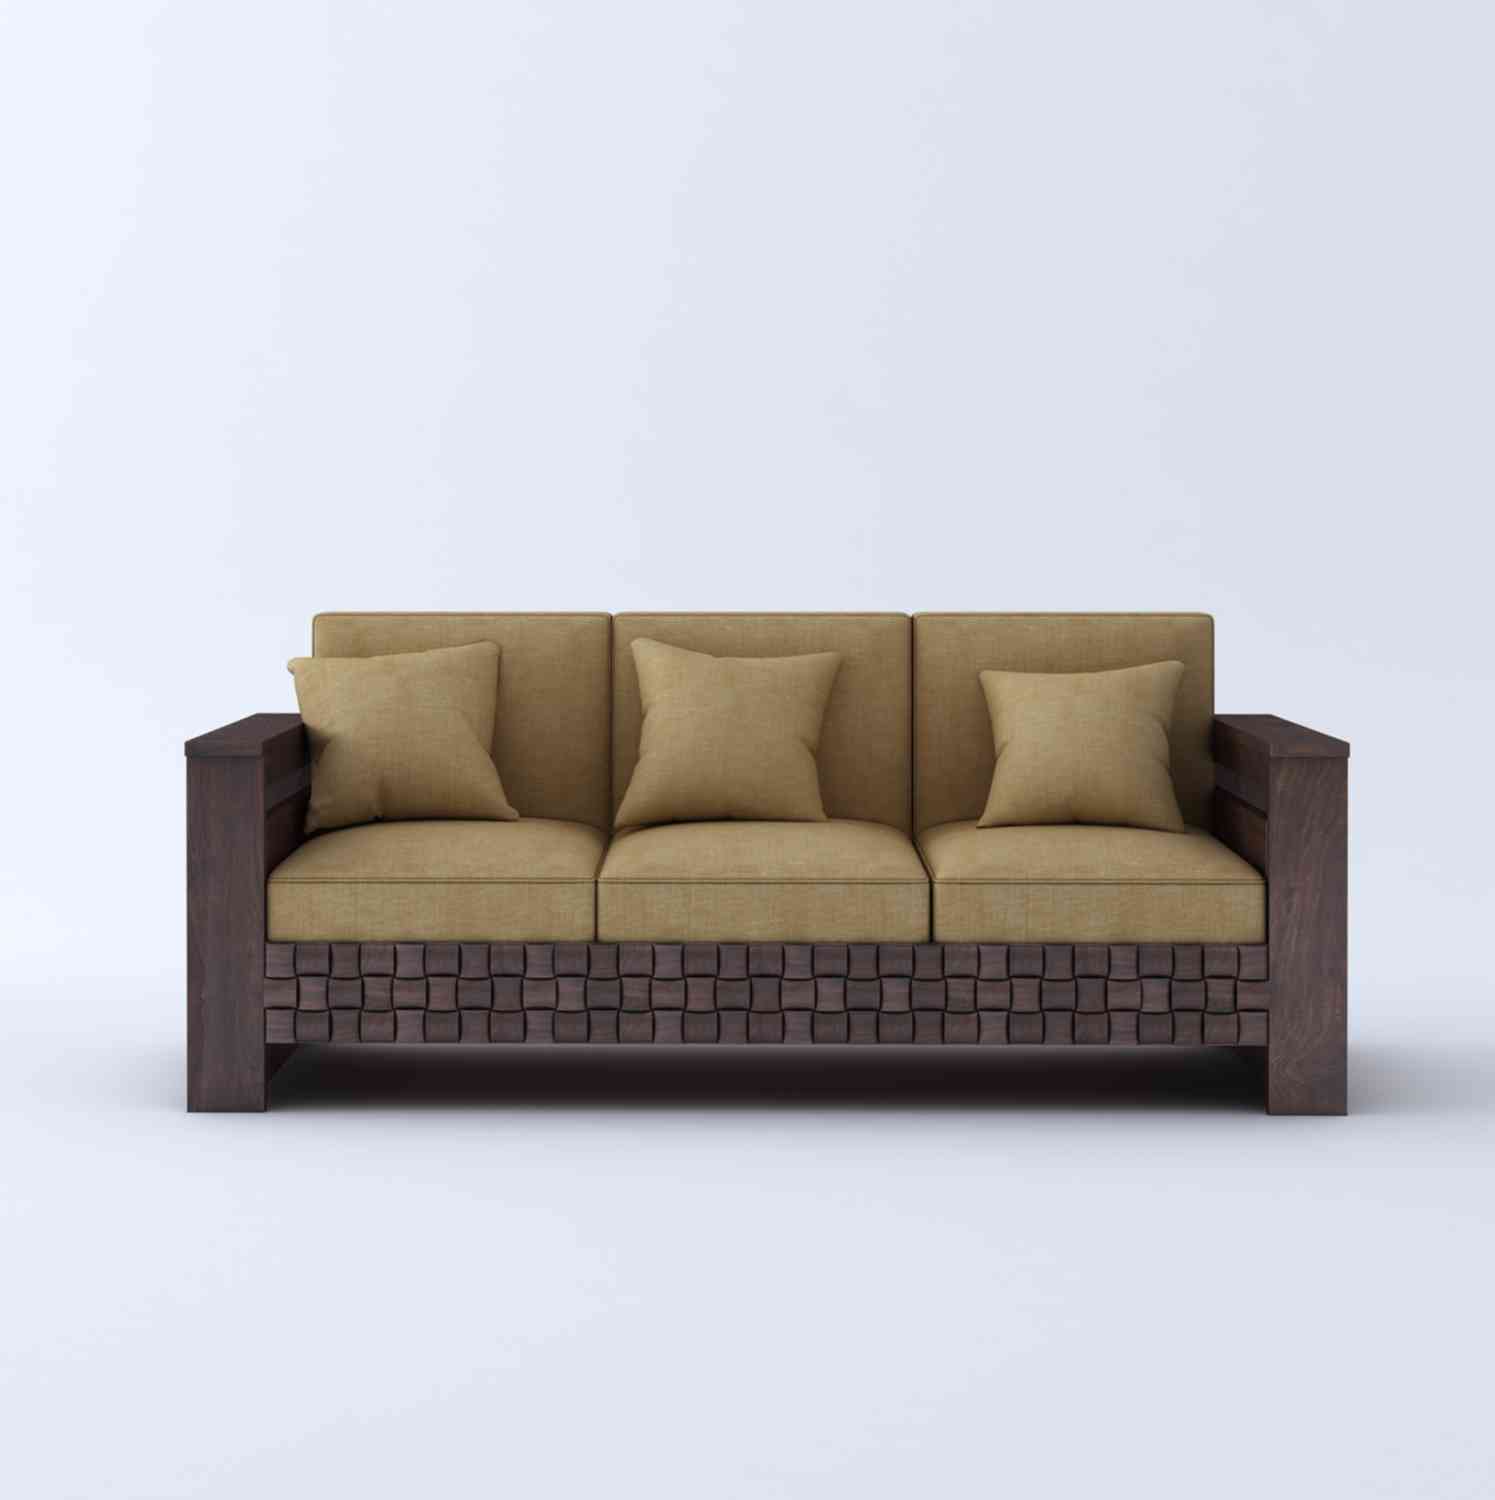 Olivia Solid Sheesham Wood 5 Seater Sofa Set (Walnut Finish, 3+1+1)